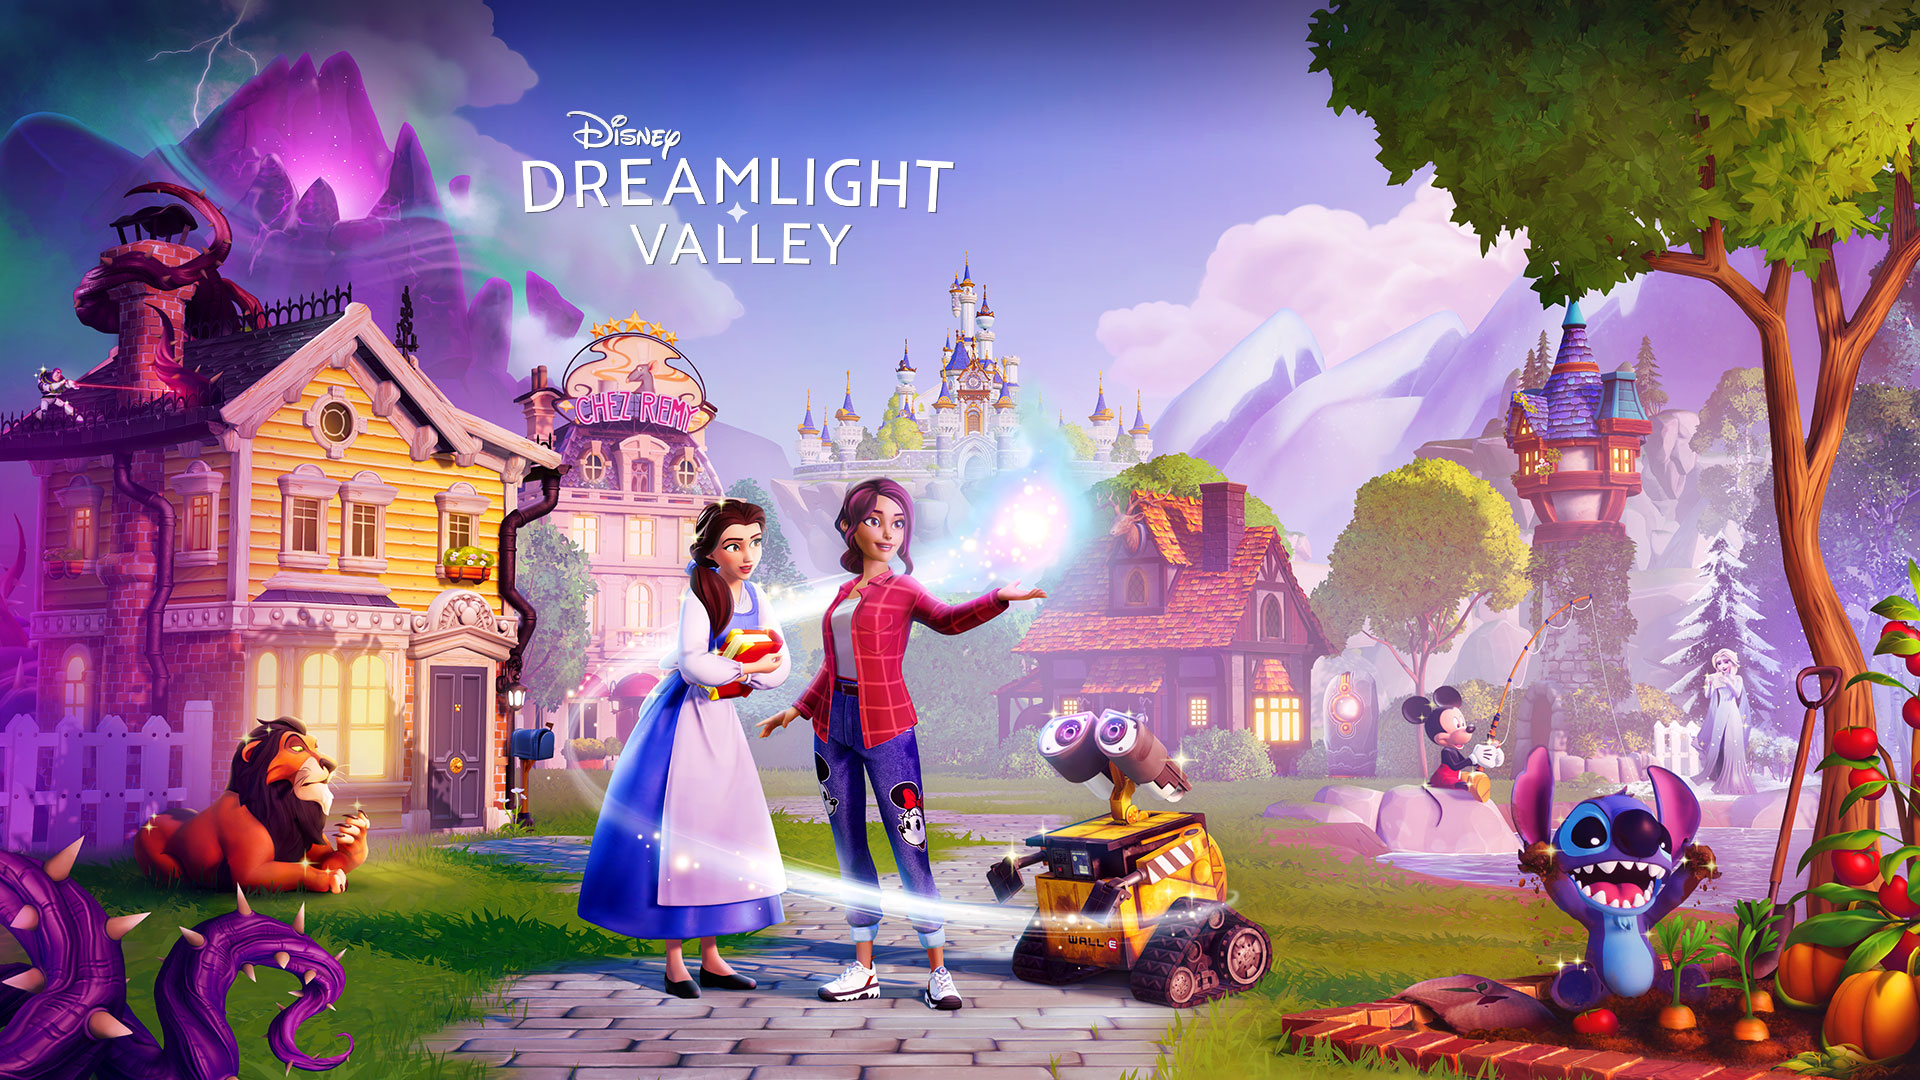 Disney Dreamlight Valley, Disney-personages zoals Belle en Wall-E verzamelen zich rond een speler in een schilderachtig stadje. 